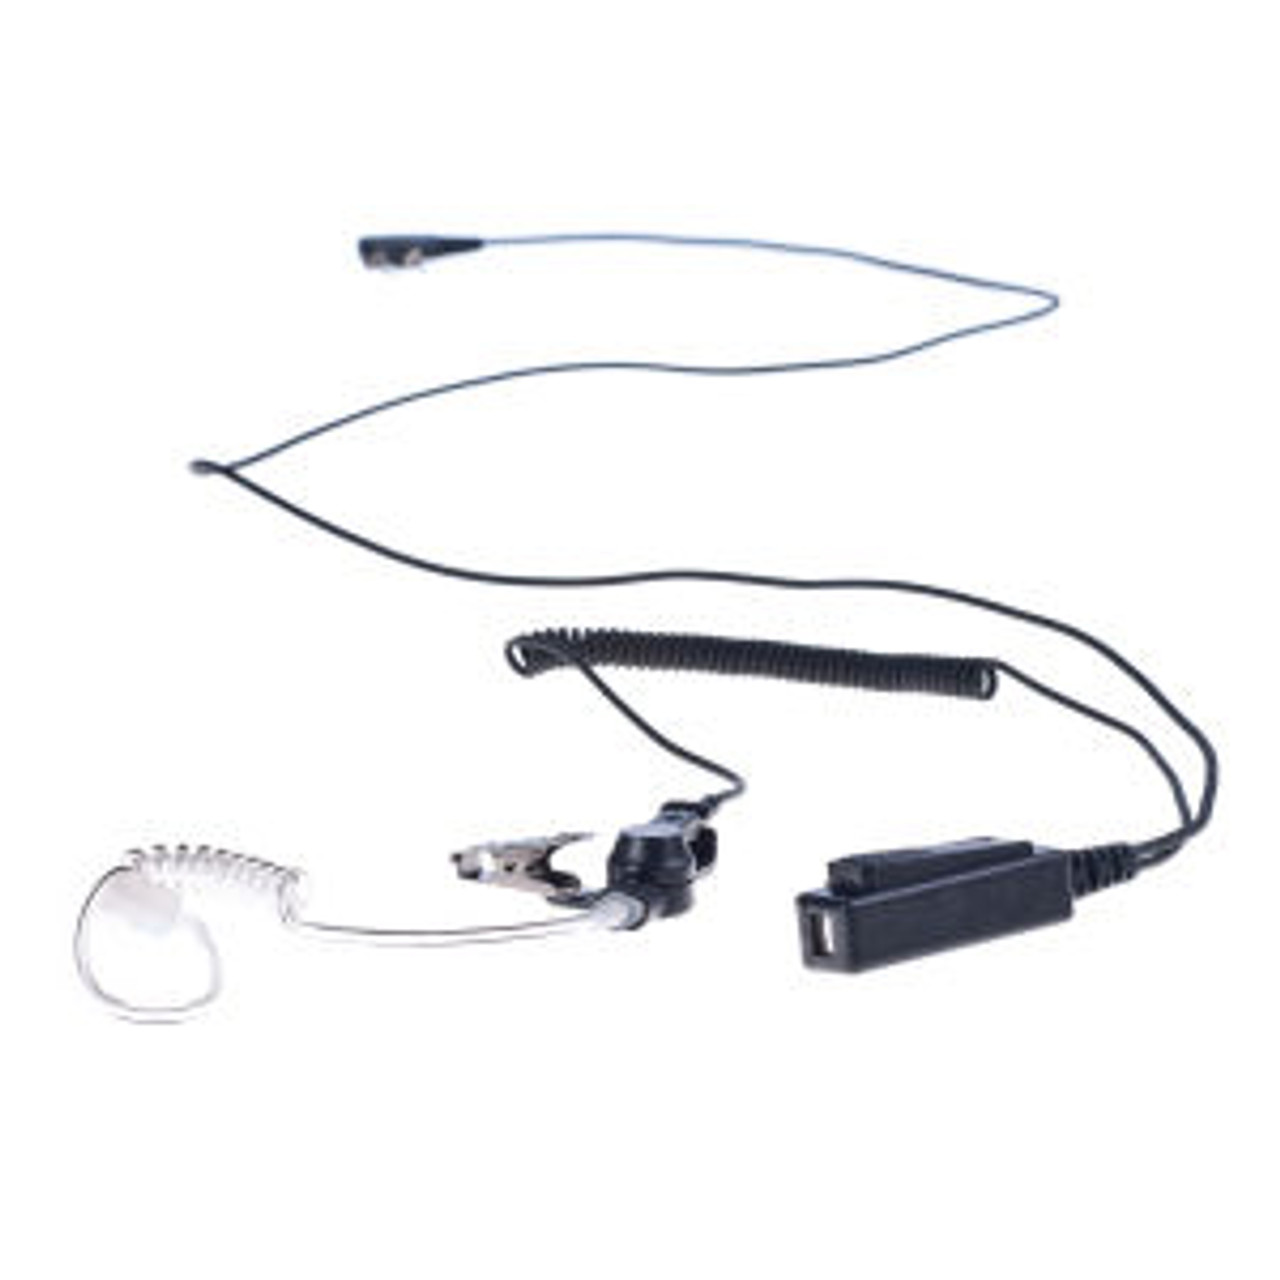 M/A-Com P5470 1-Wire Surveillance Kit